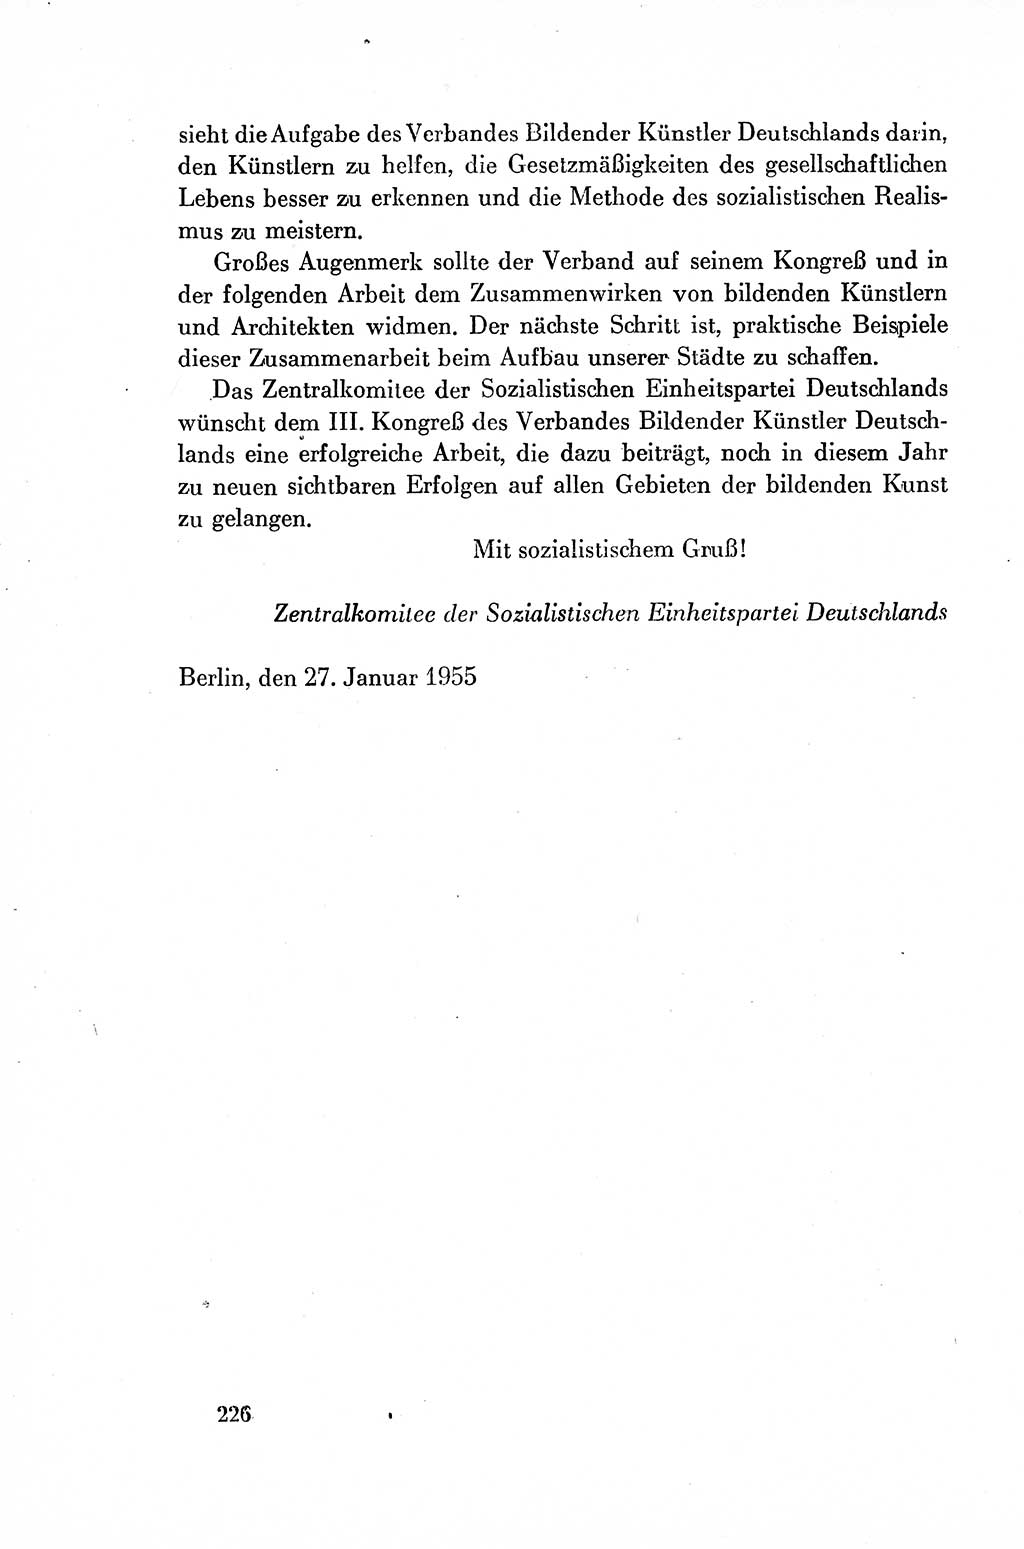 Dokumente der Sozialistischen Einheitspartei Deutschlands (SED) [Deutsche Demokratische Republik (DDR)] 1954-1955, Seite 226 (Dok. SED DDR 1954-1955, S. 226)